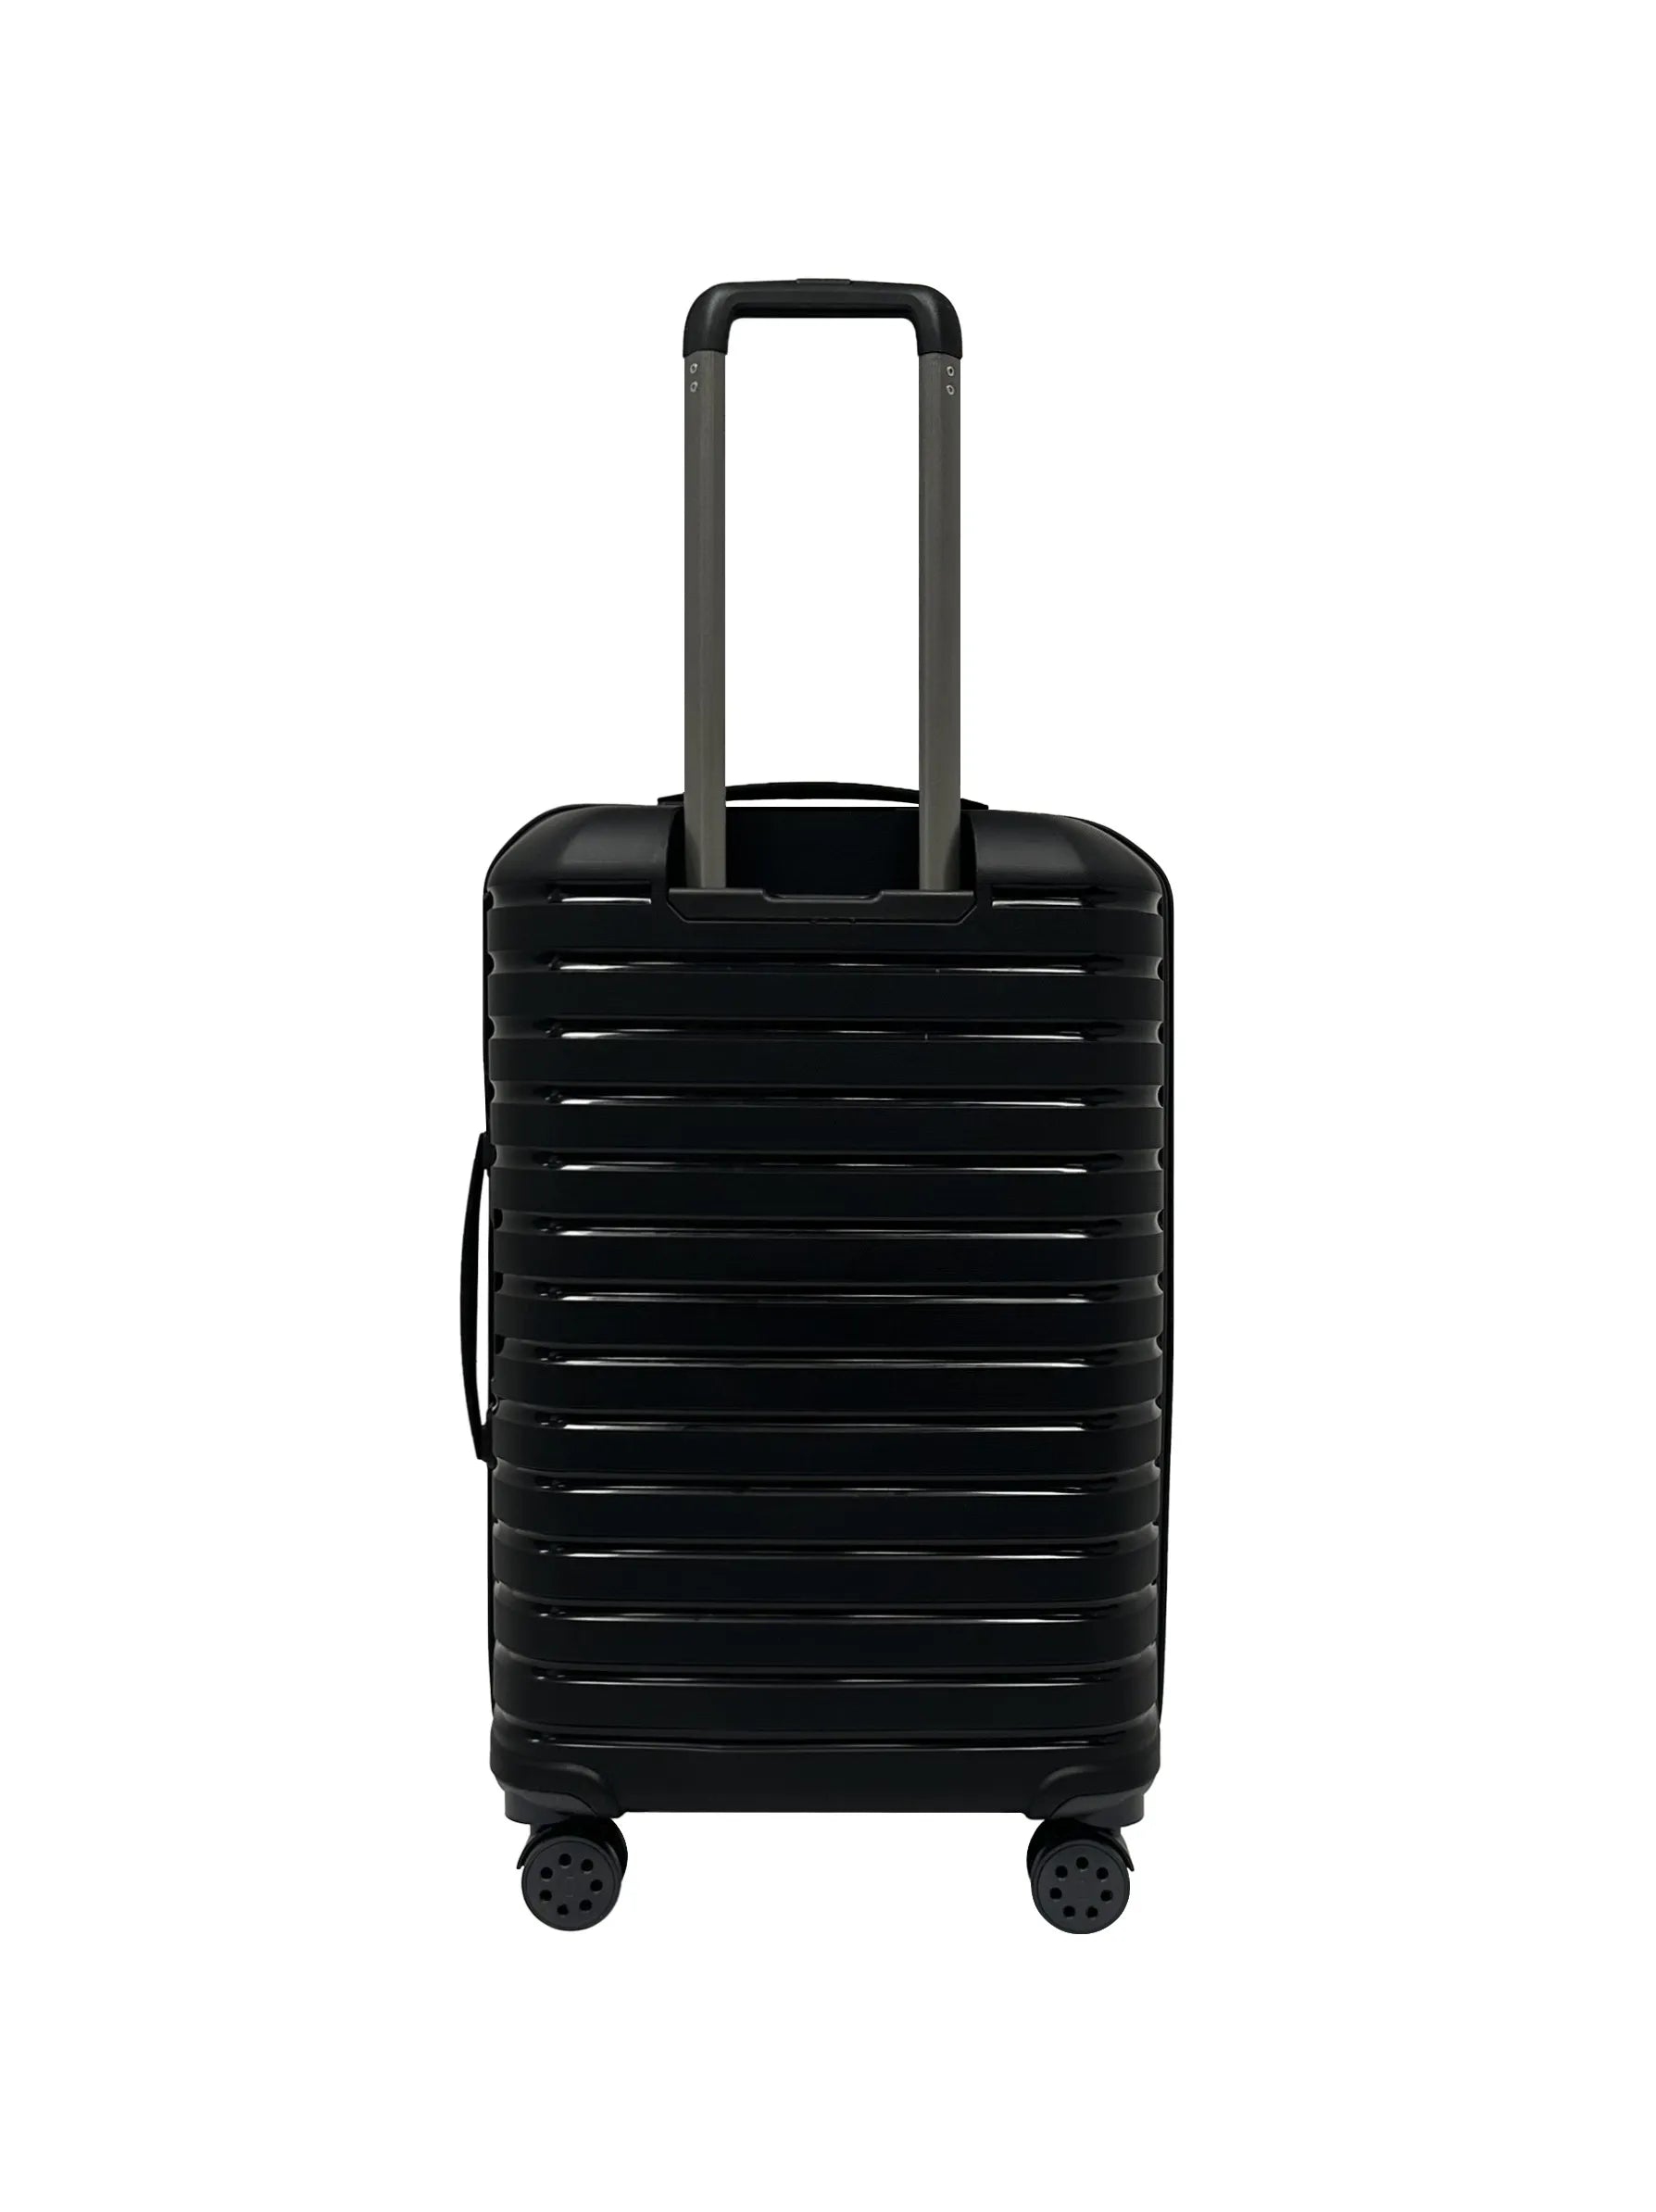 black suitcase medium